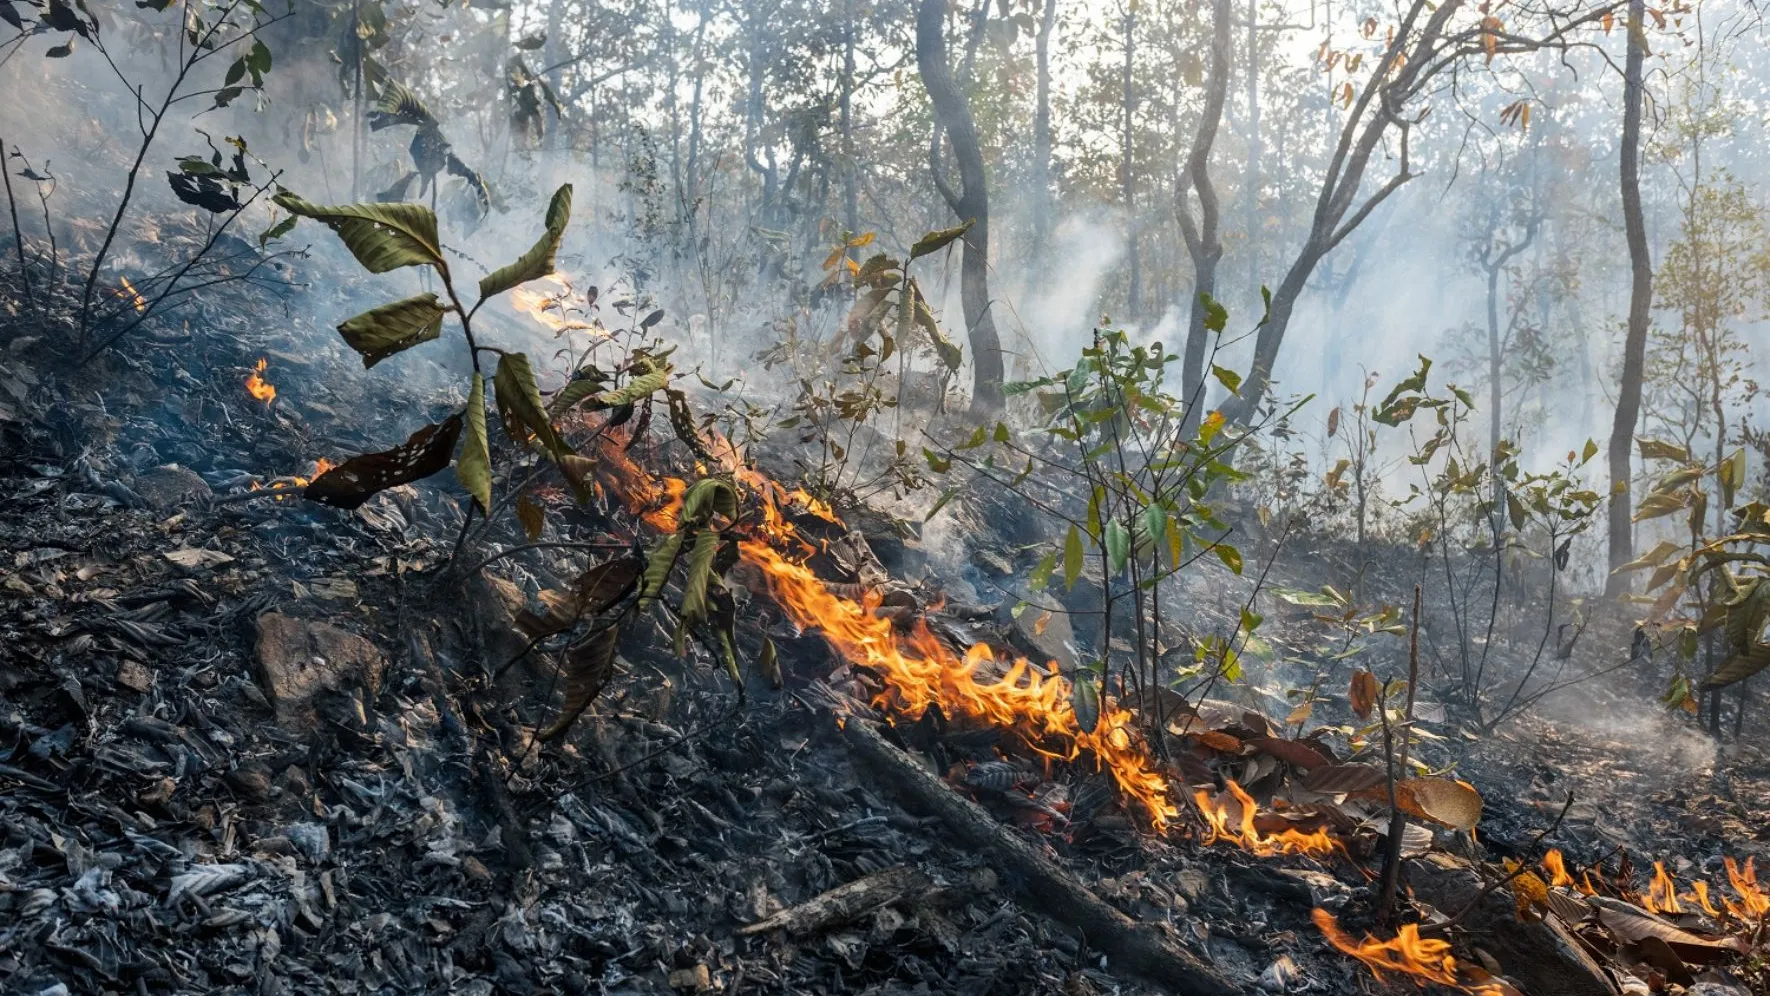 Лесные пожары чаще всего возникают по вине человека. Фото: Toa55 / shutterstock.com